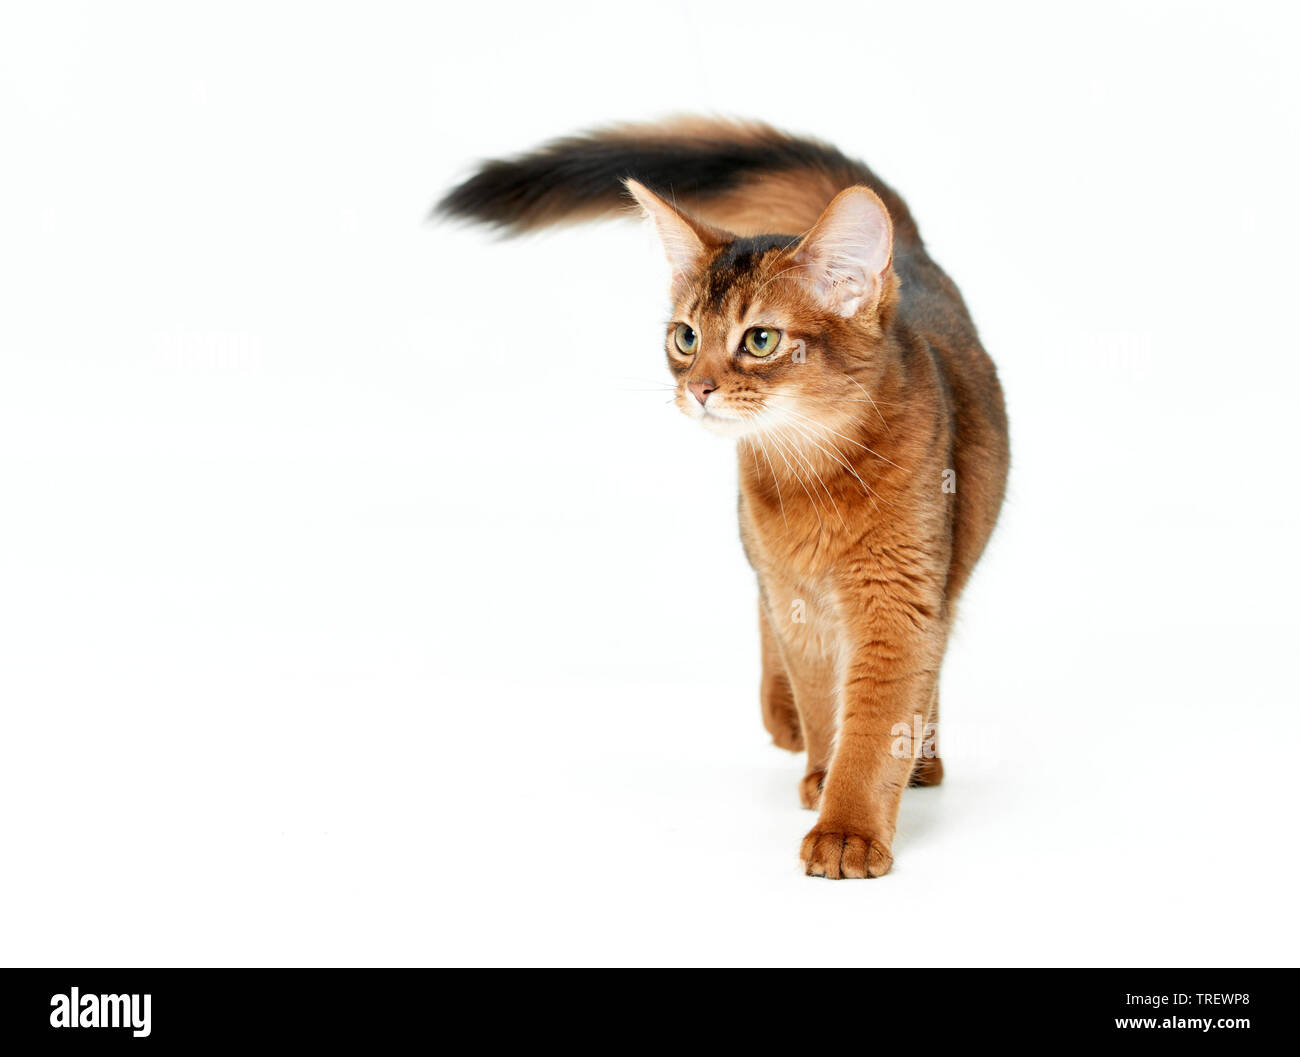 Gatto somalo. Kitten passeggiate, visto testa-a. Studio Immagine contro uno sfondo bianco Foto Stock